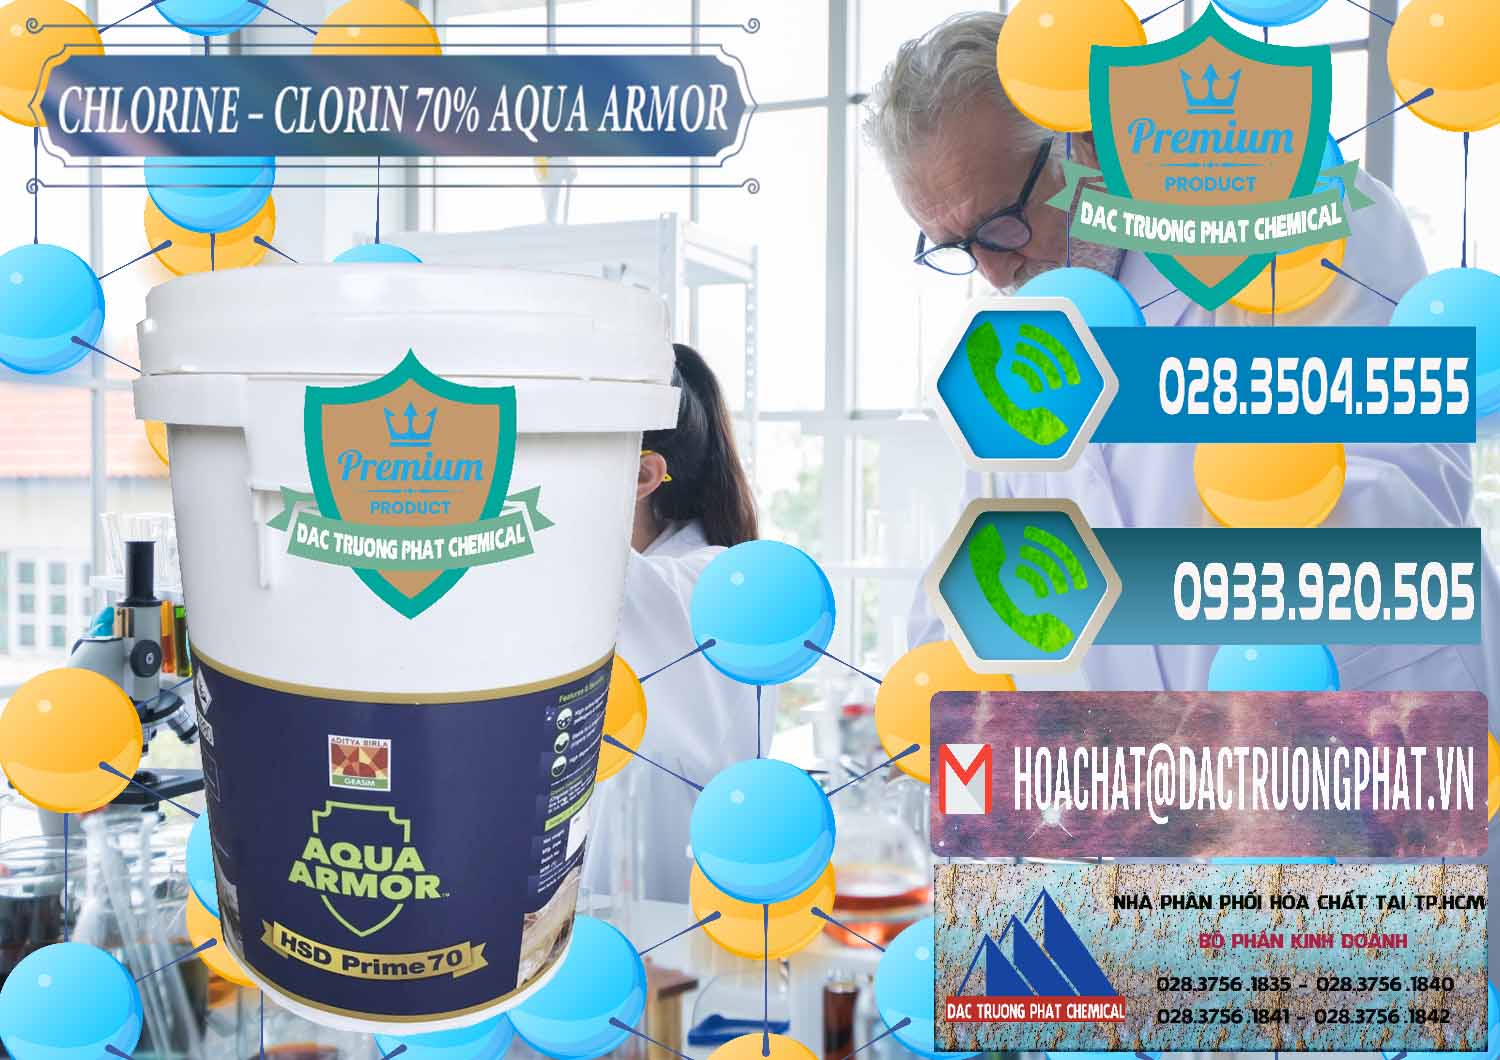 Đơn vị chuyên bán và cung ứng Chlorine – Clorin 70% Aqua Armor Aditya Birla Grasim Ấn Độ India - 0241 - Nơi chuyên kinh doanh - phân phối hóa chất tại TP.HCM - congtyhoachat.net